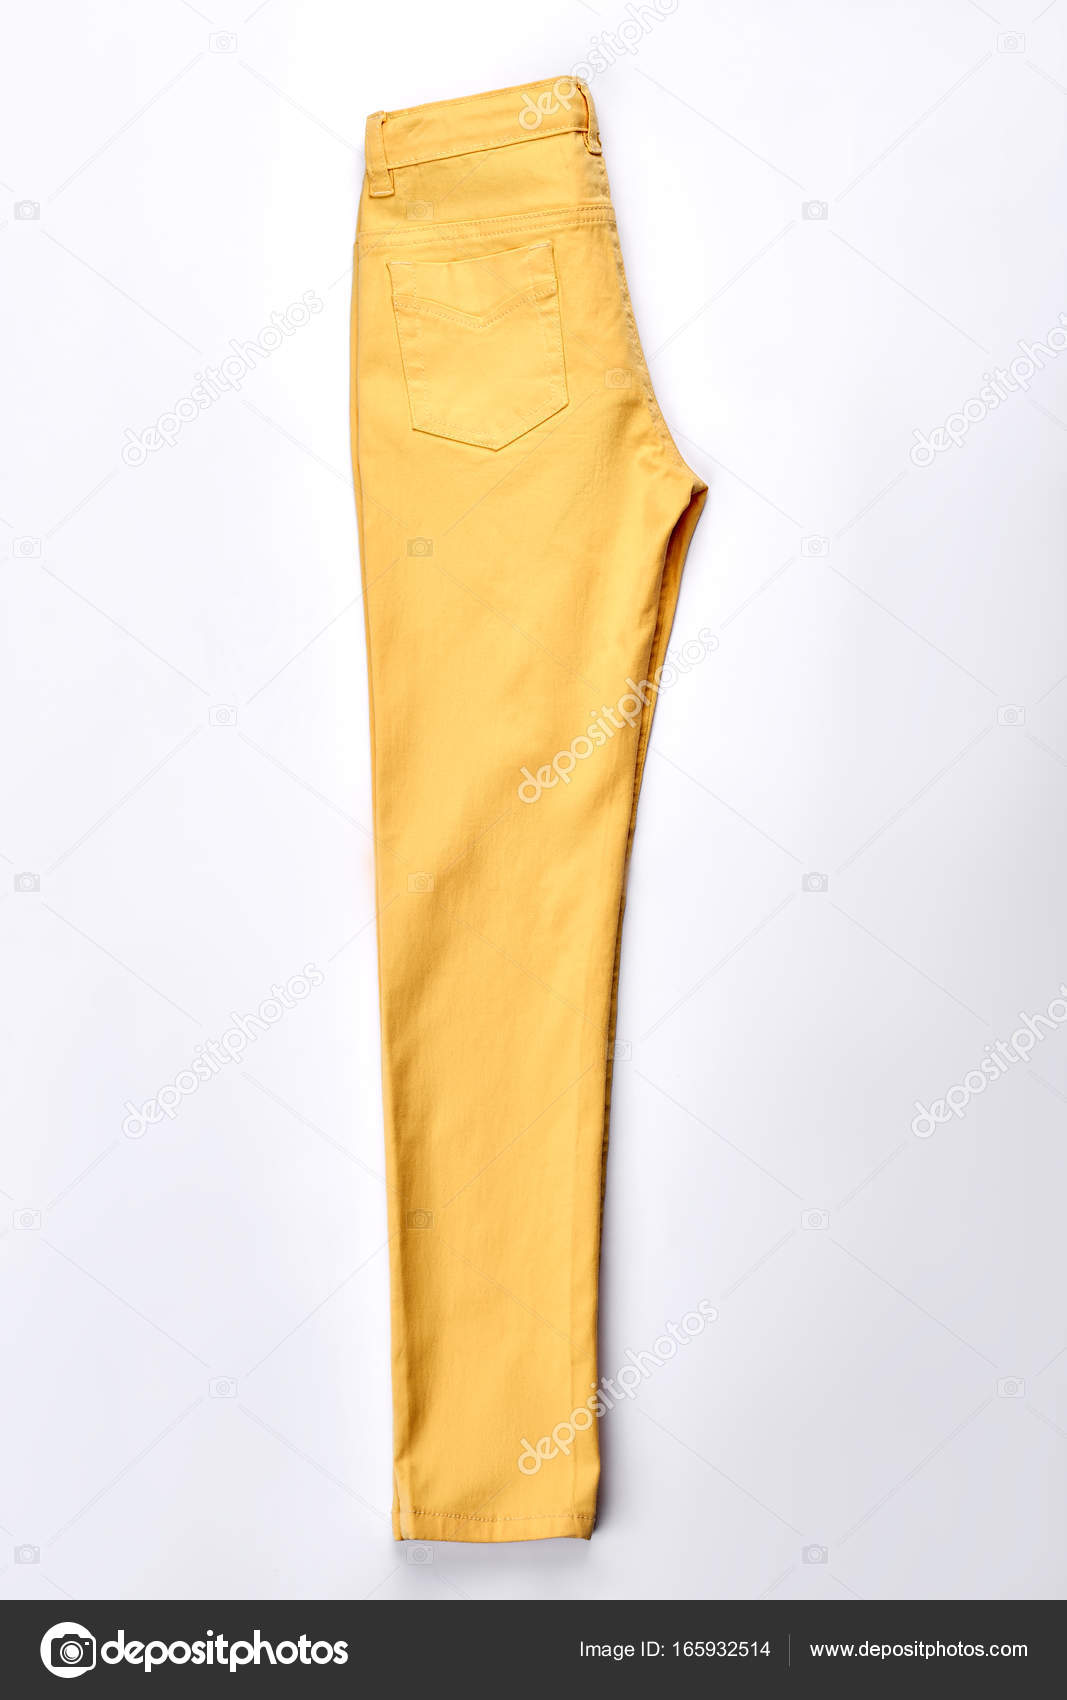 Verbazingwekkend Vrouwelijke nieuwe gevouwen gele broek. — Stockfoto © Denisfilm CM-89